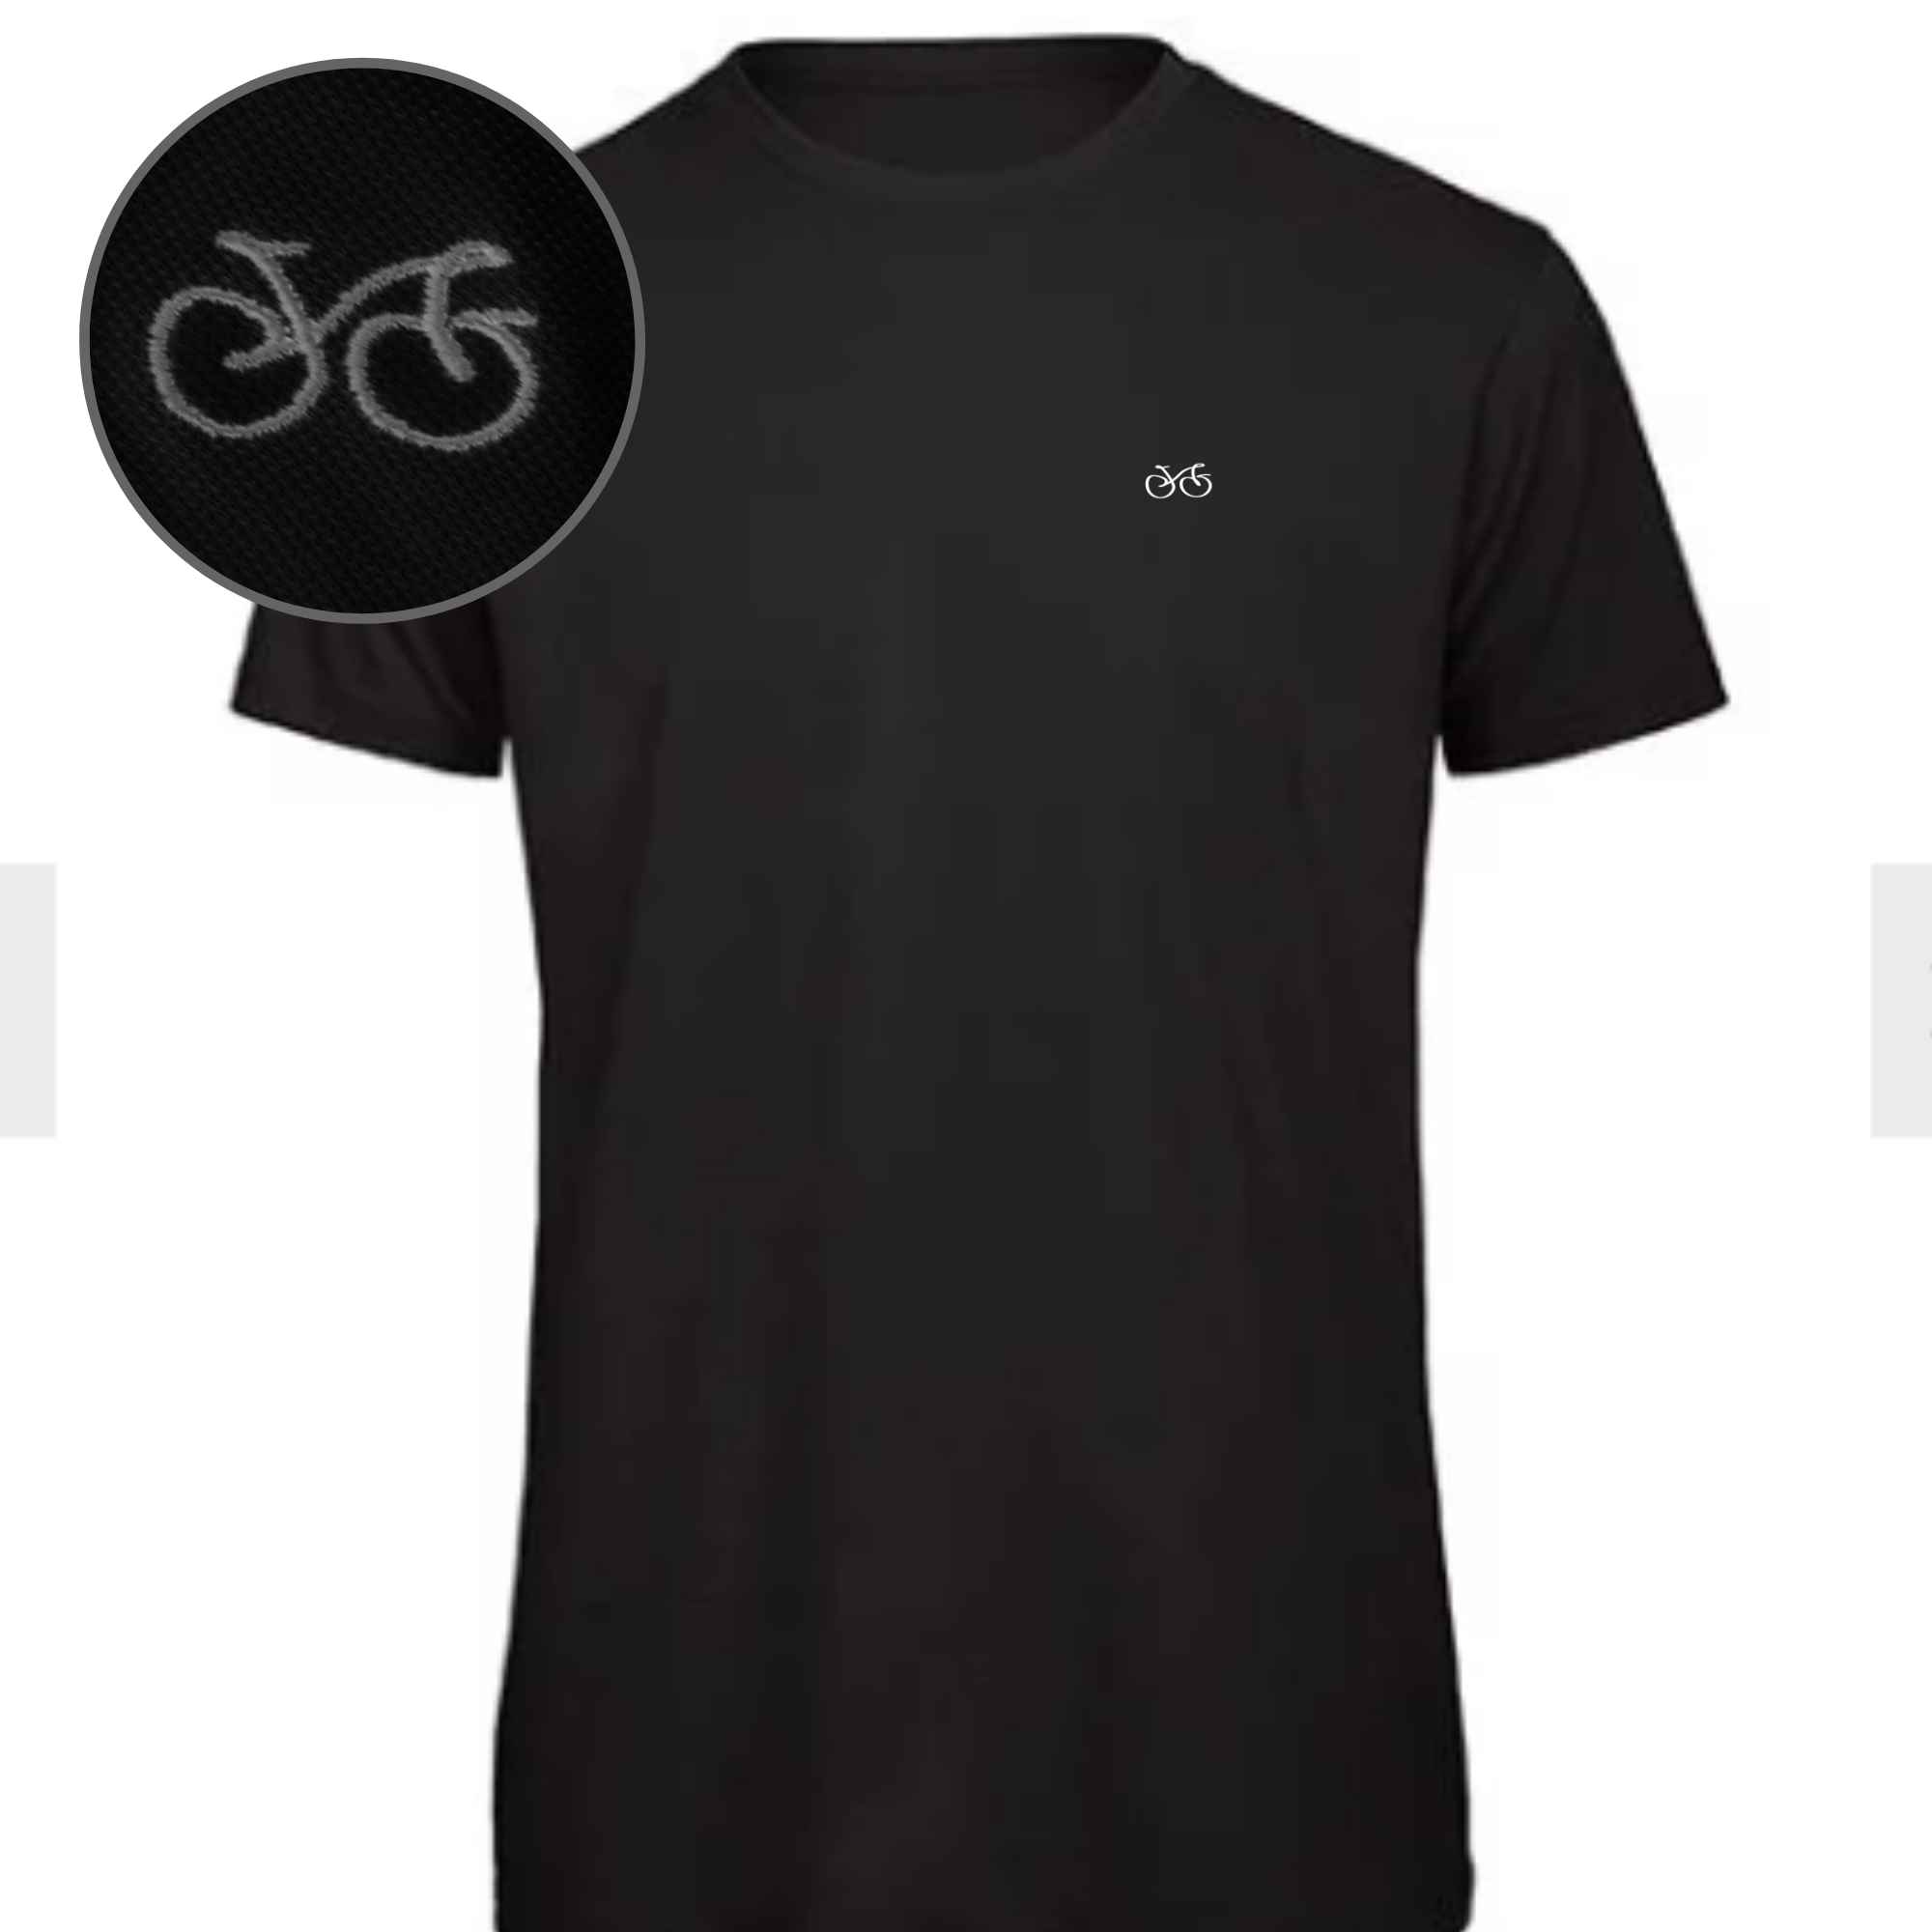 T-Shirt mit Fahrrad-Stick auf der Brust in Schwarz für Fahrradfahrer